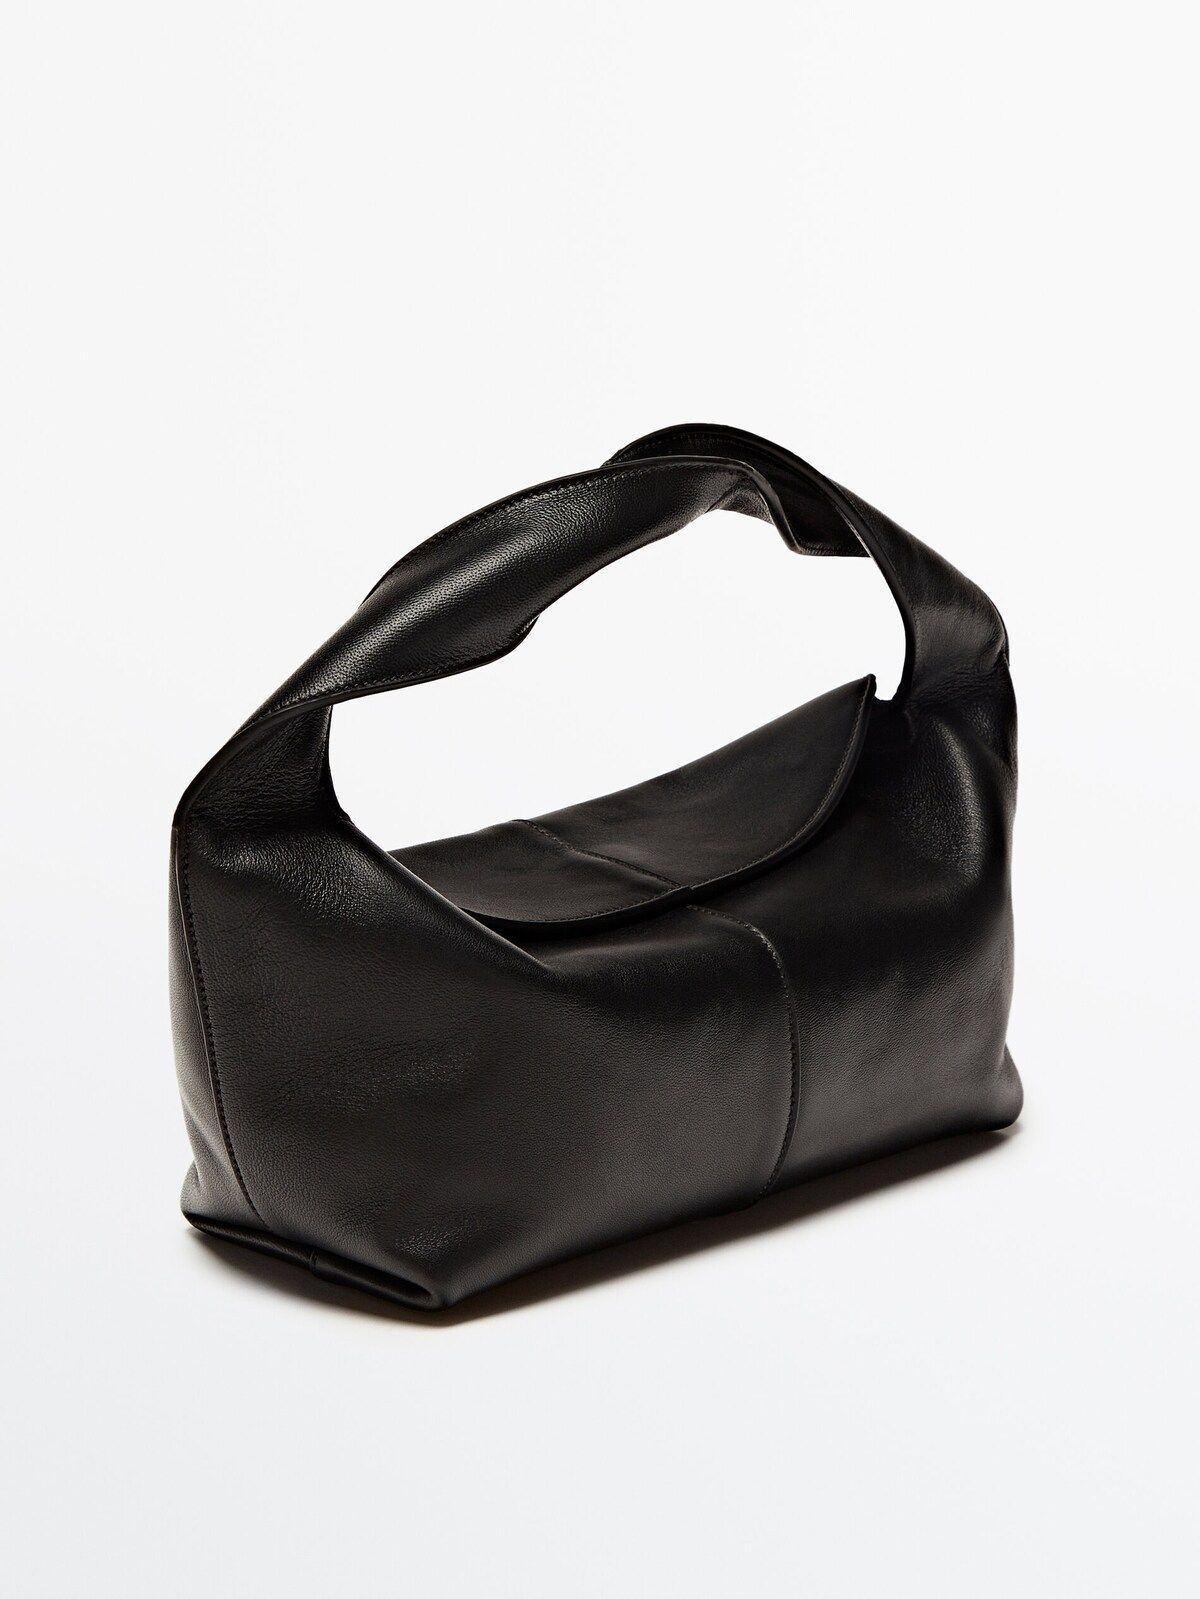 Nappa leather croissant bag | Massimo Dutti (US)